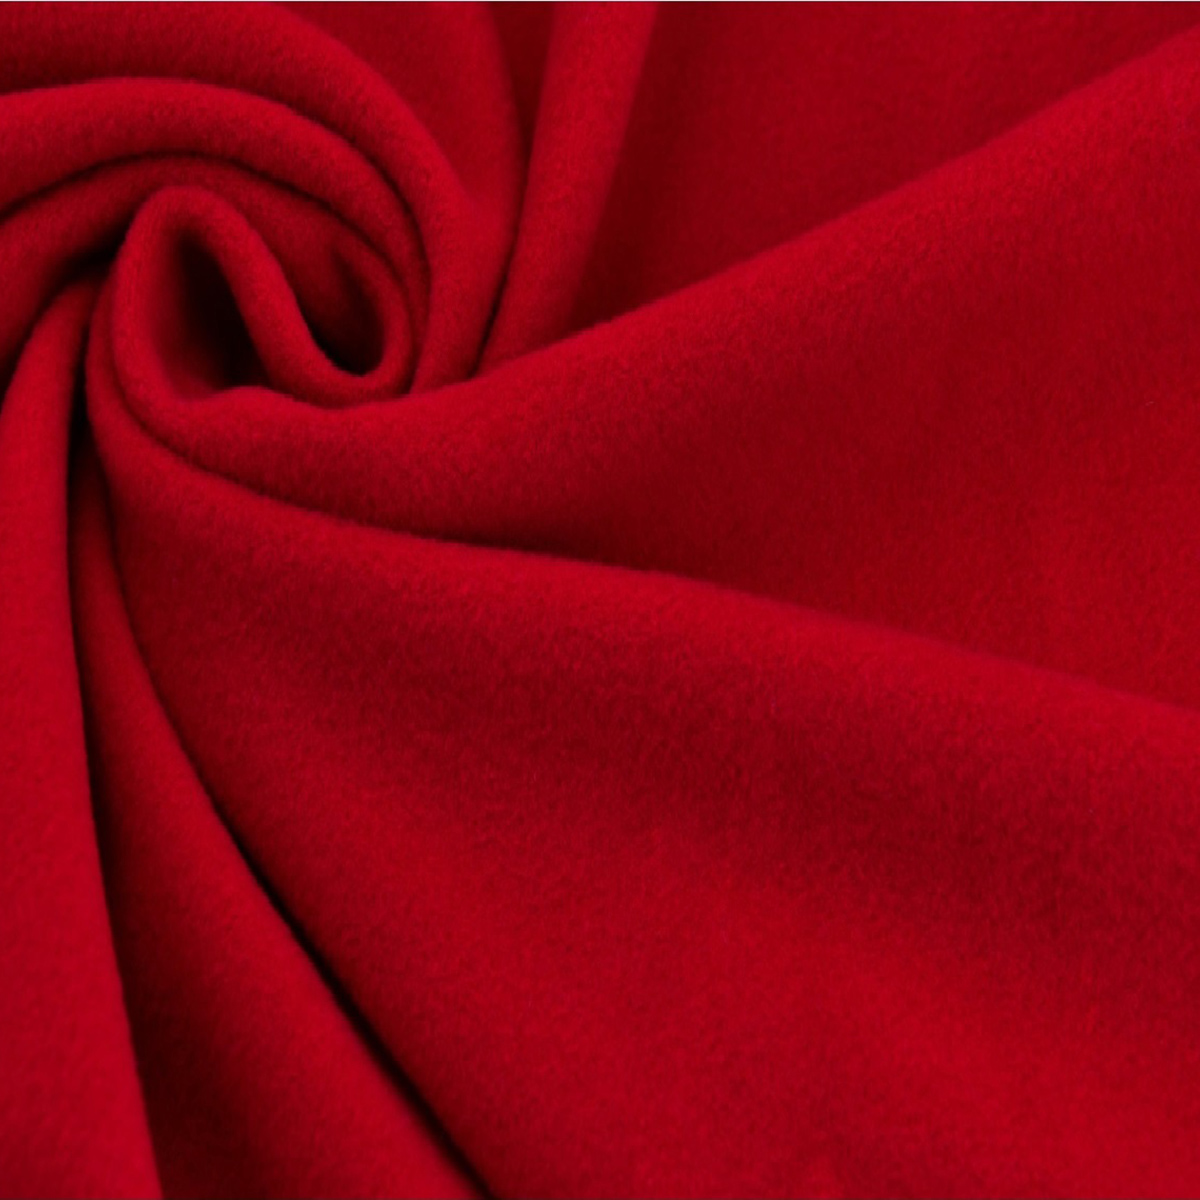 Coat fabric, chili/red